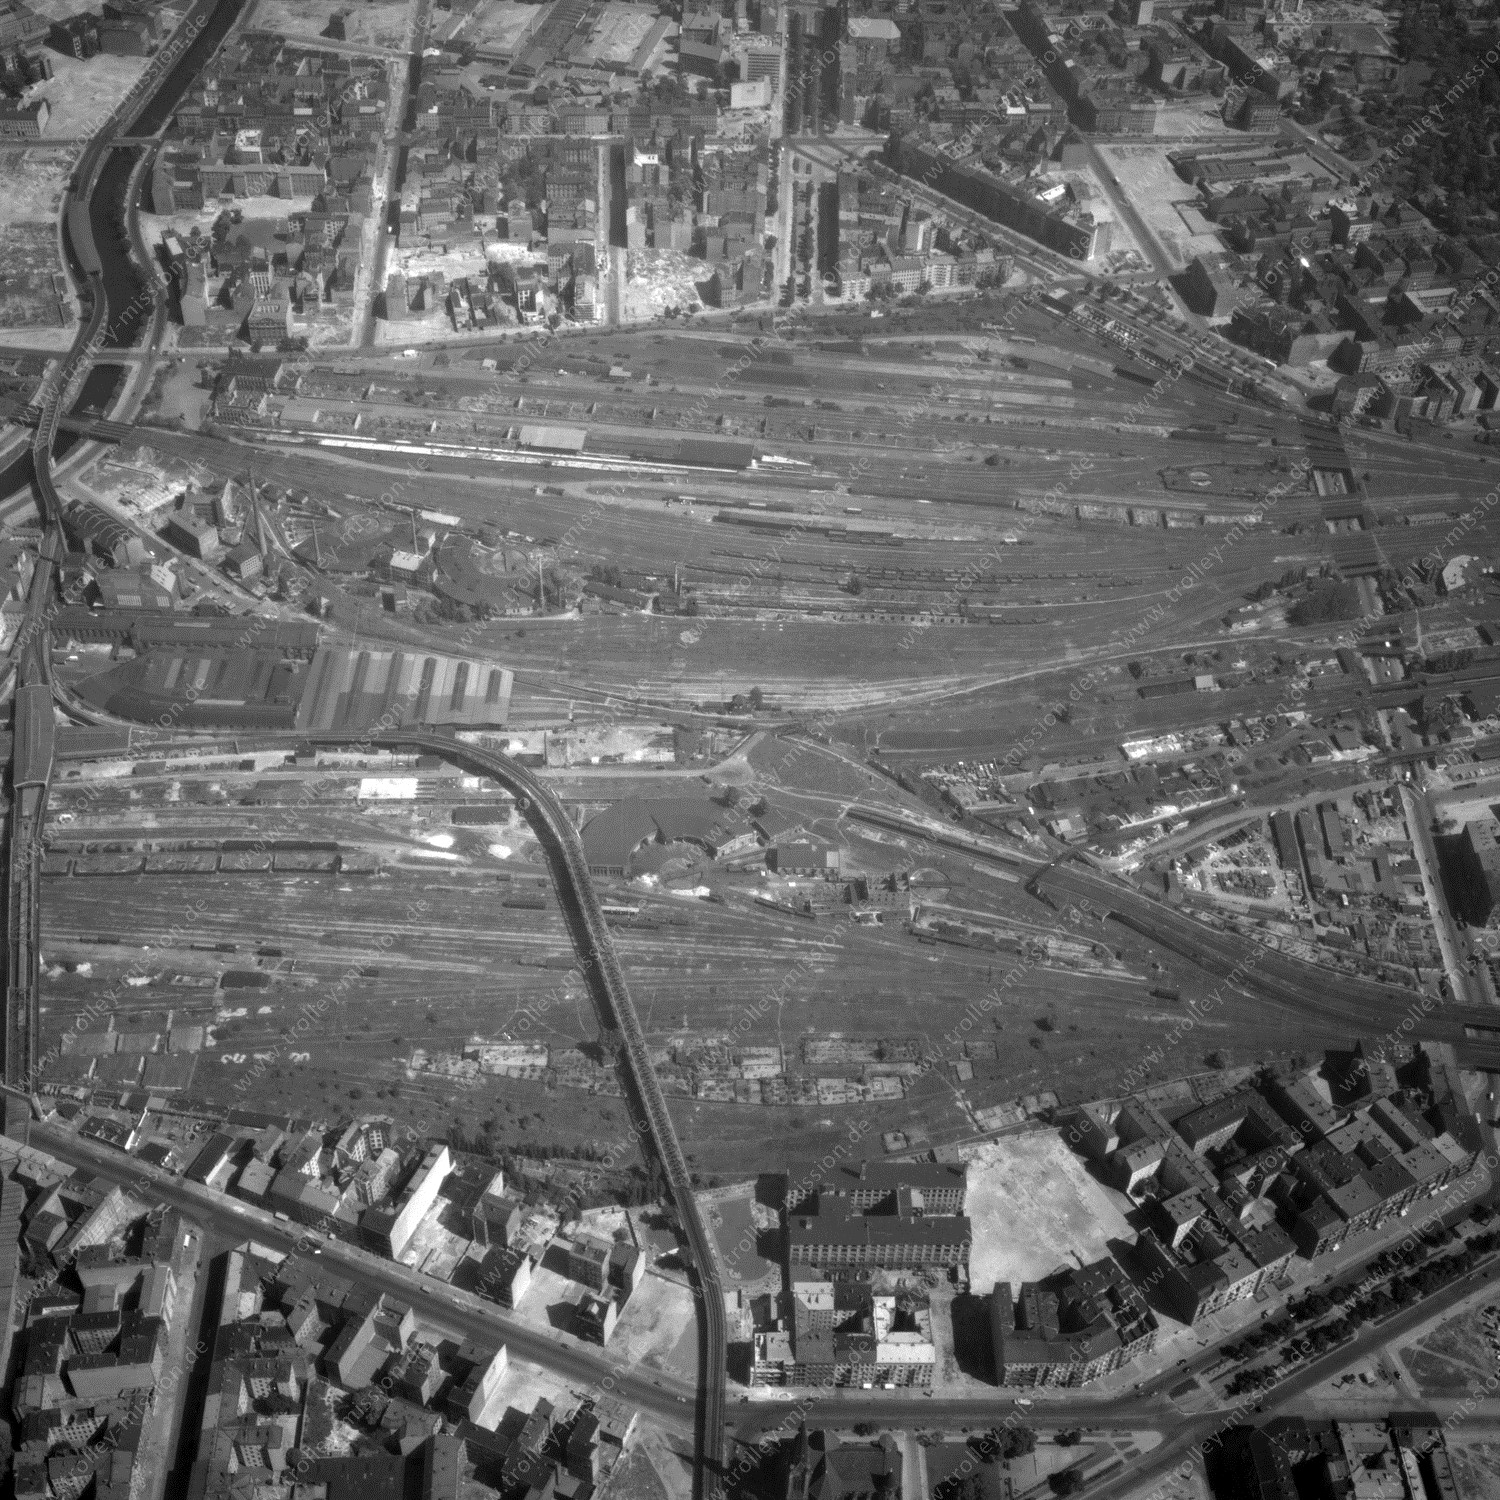 Alte Fotos und Luftbilder von Berlin - Luftbildaufnahme Nr. 05 - Historische Luftaufnahmen von West-Berlin aus dem Jahr 1954 - Flugstrecke Hotel